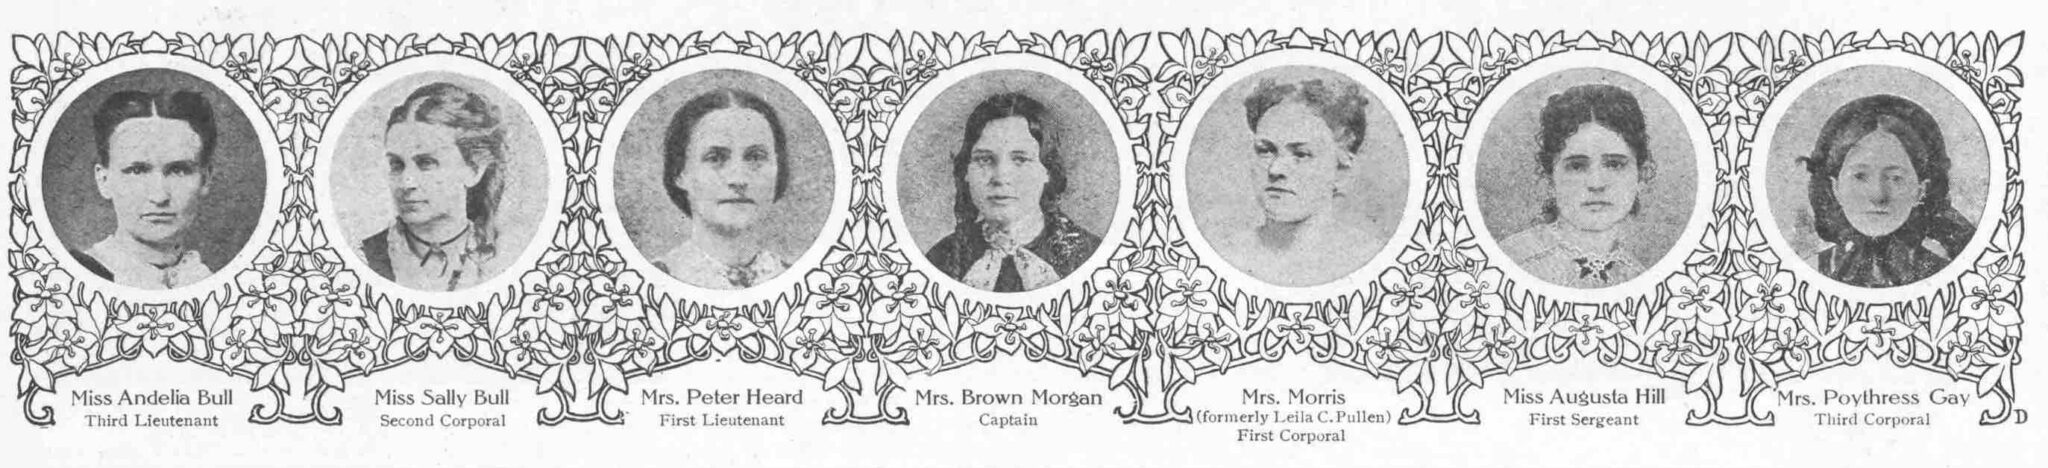 Ladies-Home-Journal-Nov-1904-officers-nancy-harts-visit-lagrange